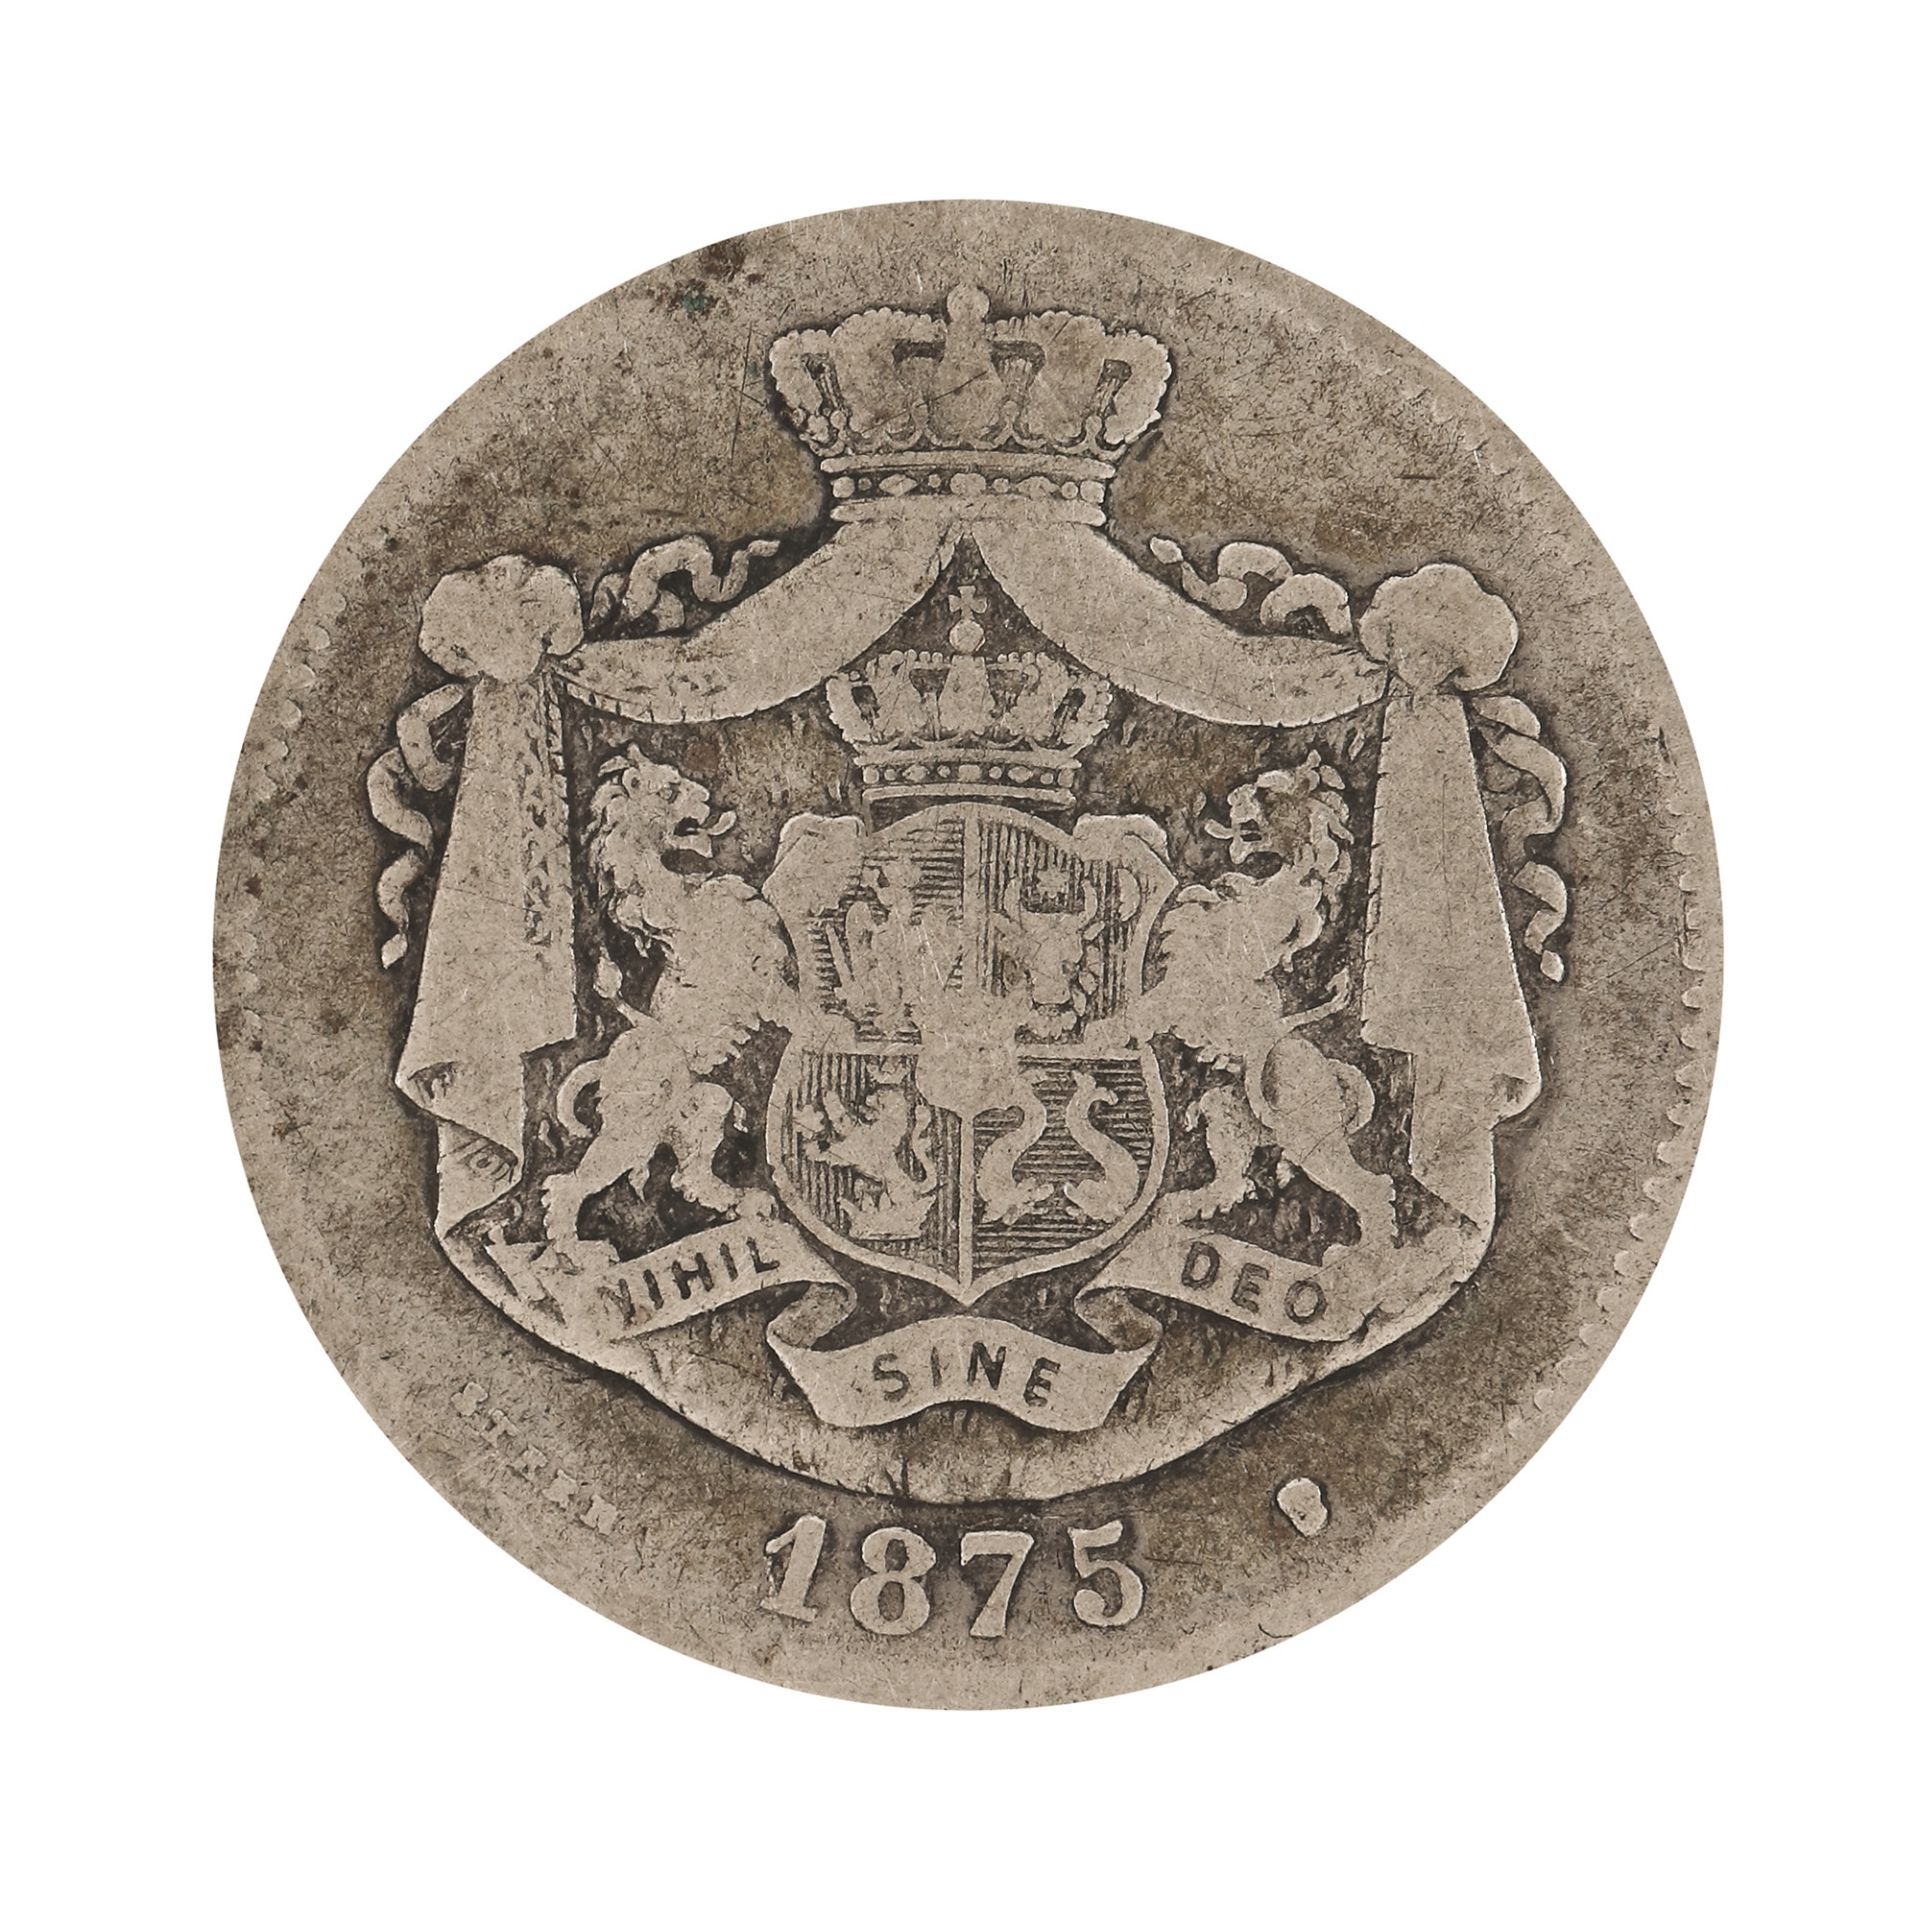 2 Lei 1875 coin, silver